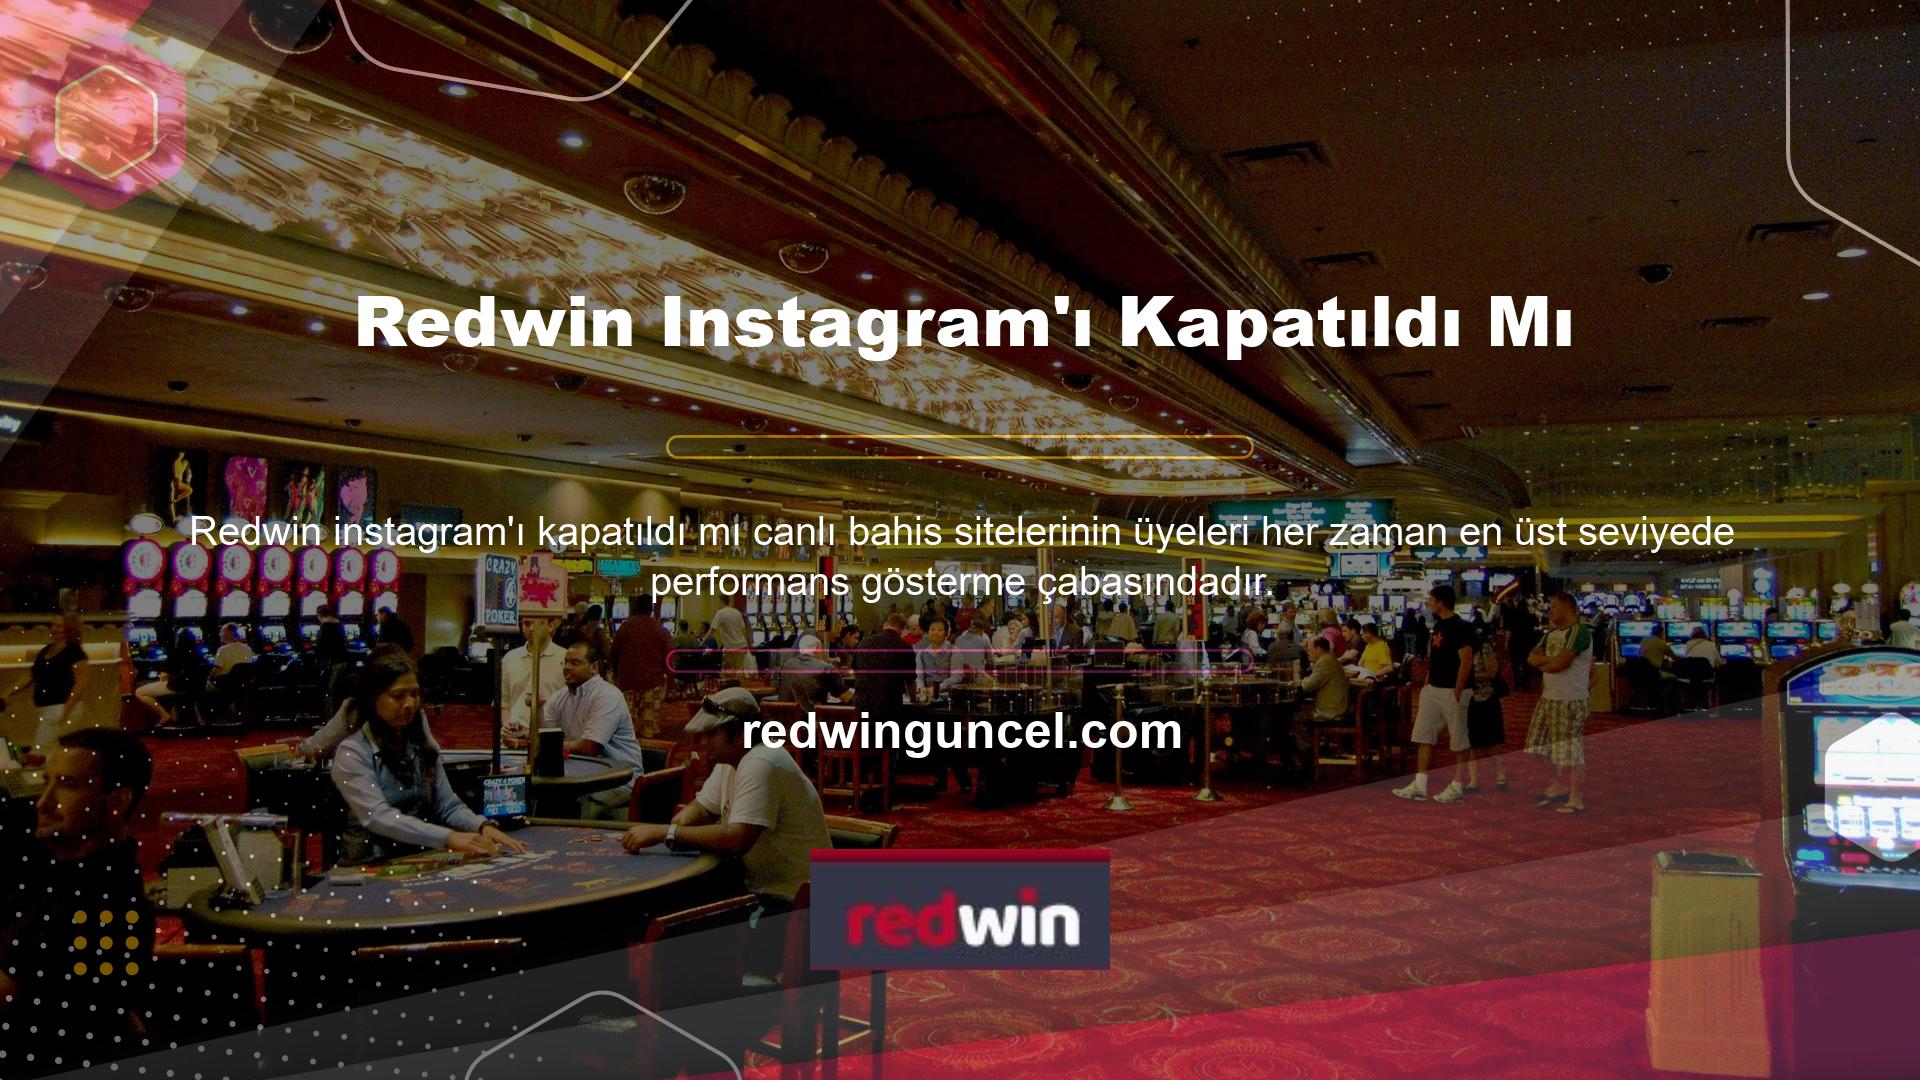 Redwin Instagram hesabı da yüksek profili nedeniyle dikkat çekiyor